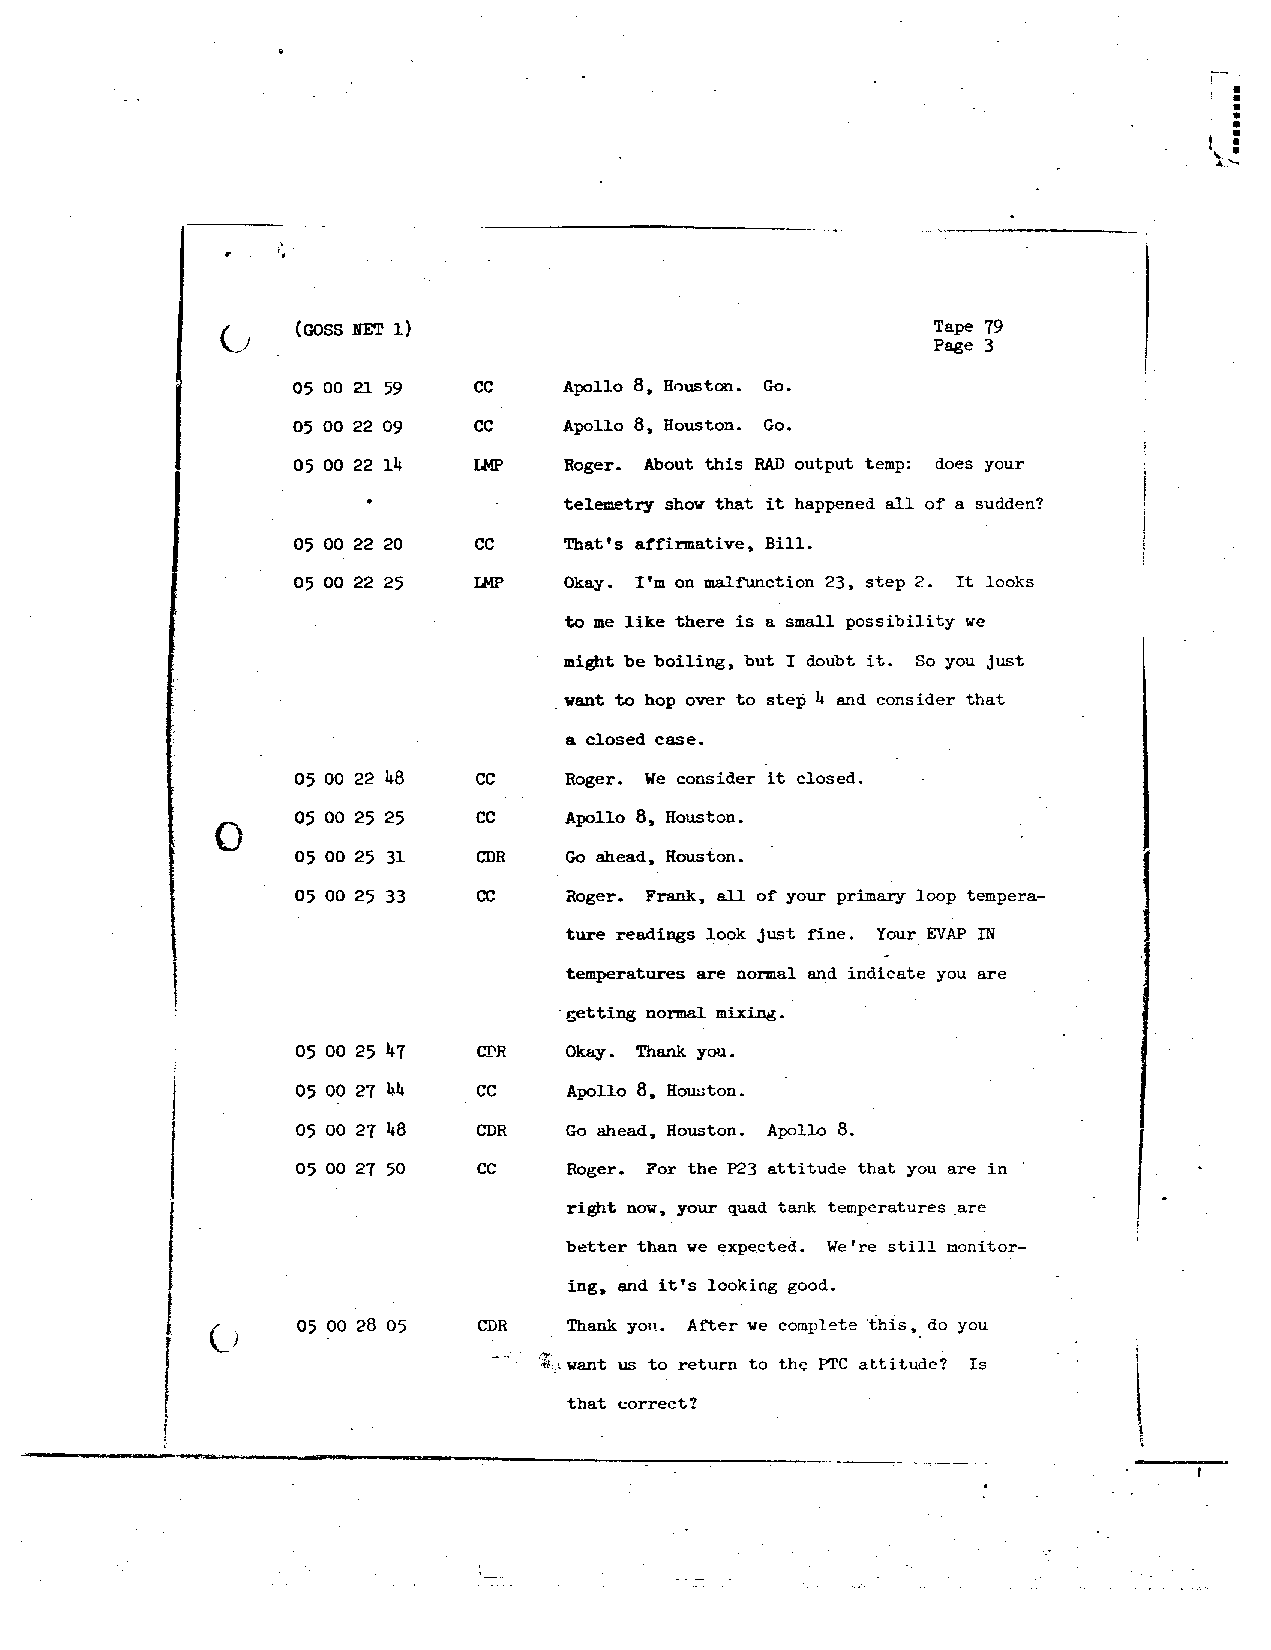 Page 654 of Apollo 8’s original transcript